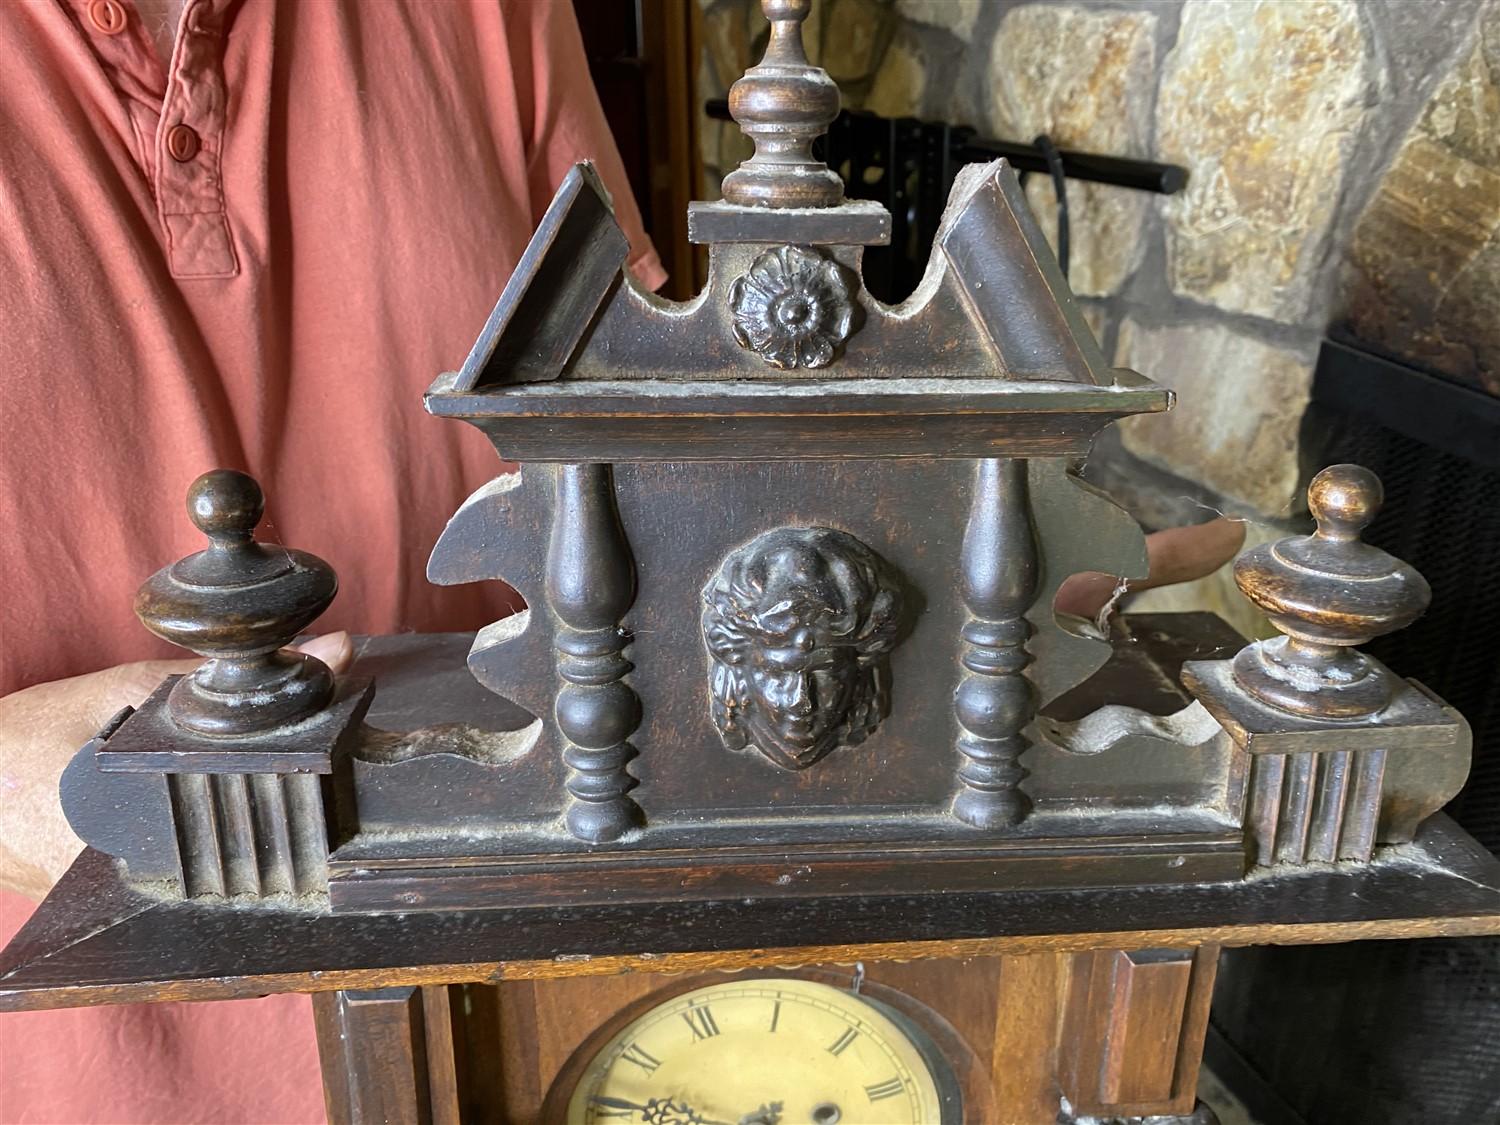 Antique Clock with elaborate design